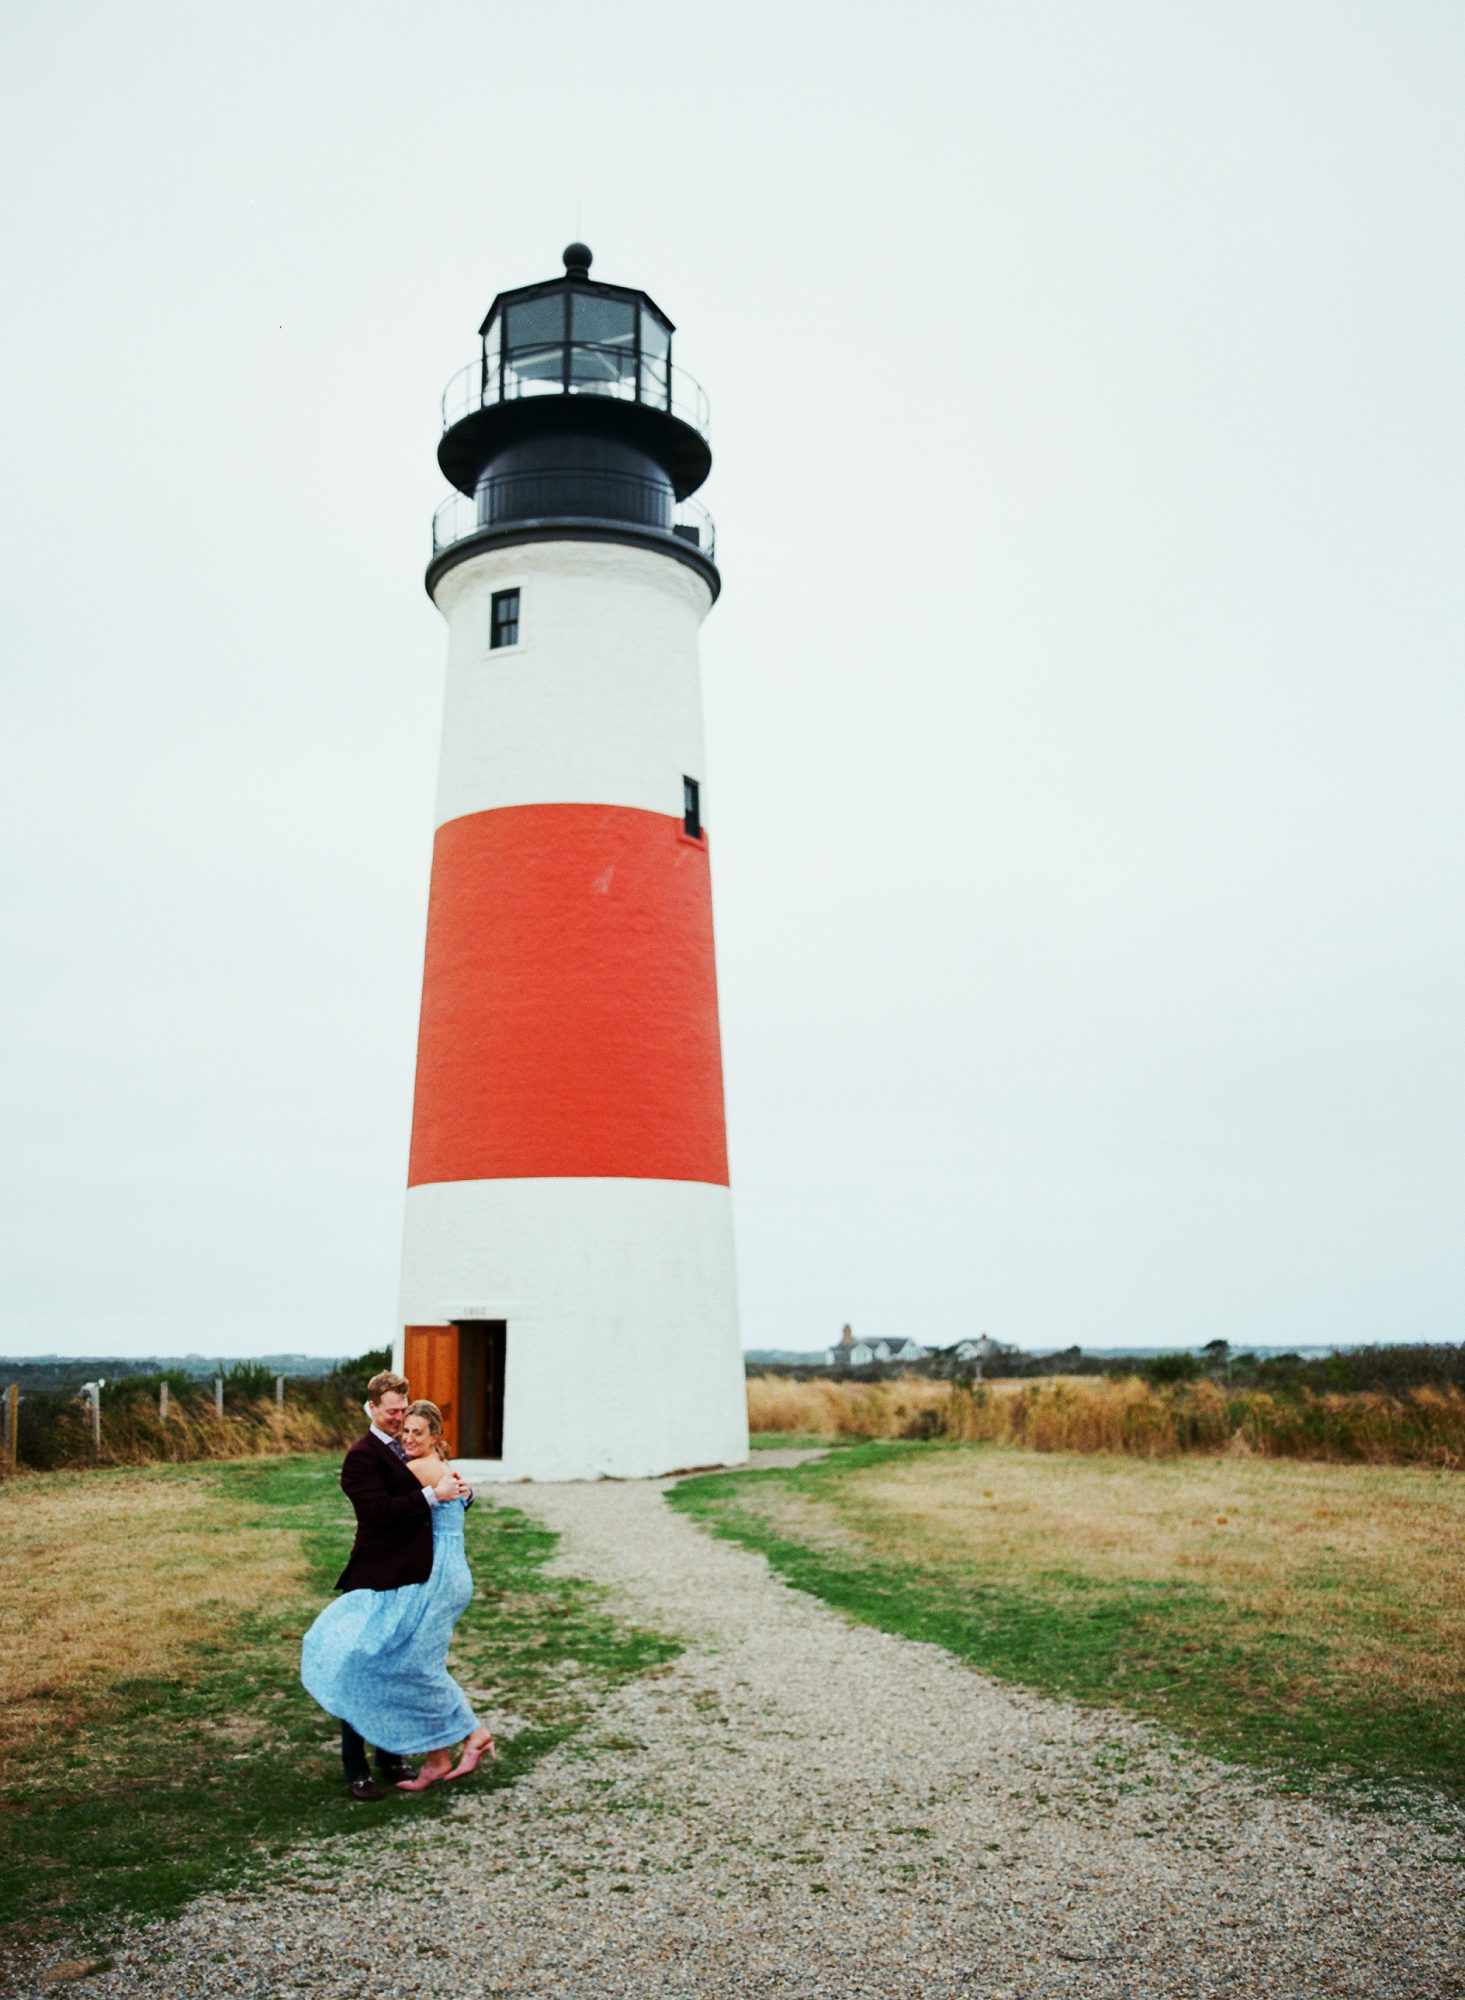 Sankaty Head Lighthouse in Nantucket, Massachusetts